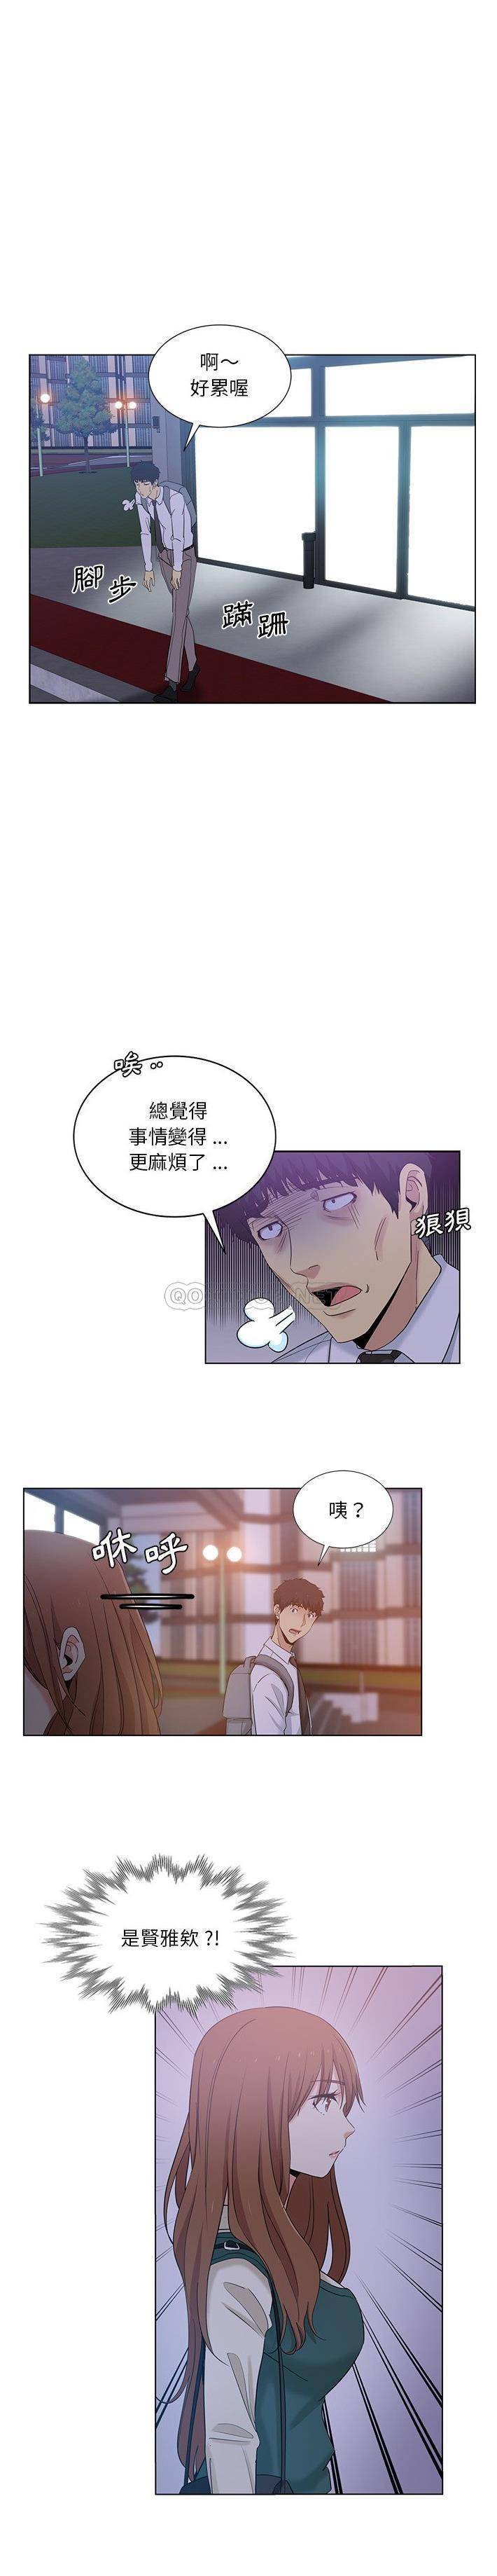 韩国污漫画 危險純友誼 第24话 13